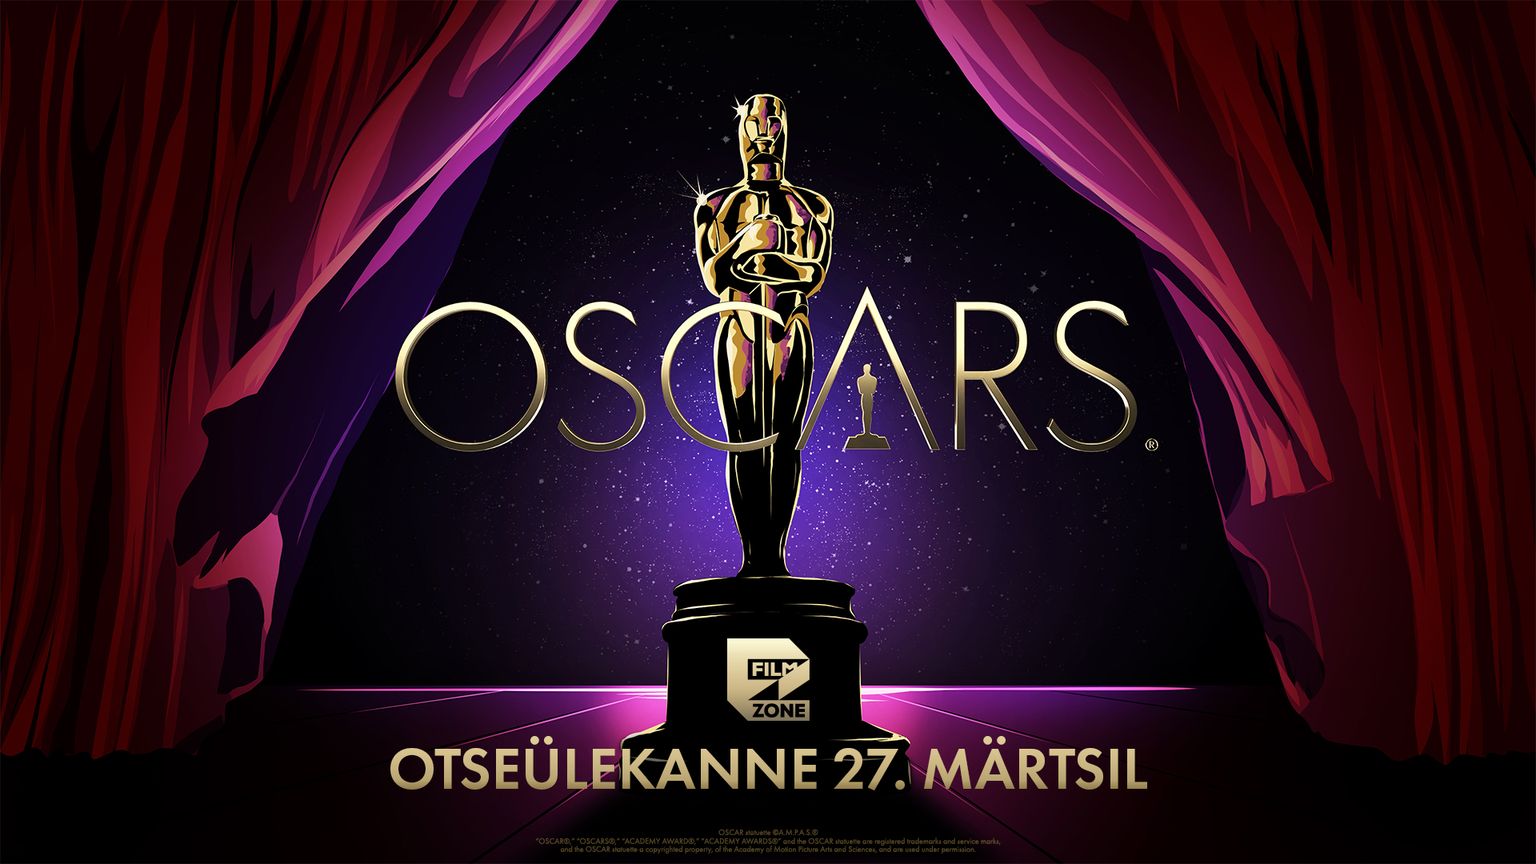 Oscarite otseülekanne on Filmzone'is vaadatav 27. märtsi ööl vastu esmaspäeva.